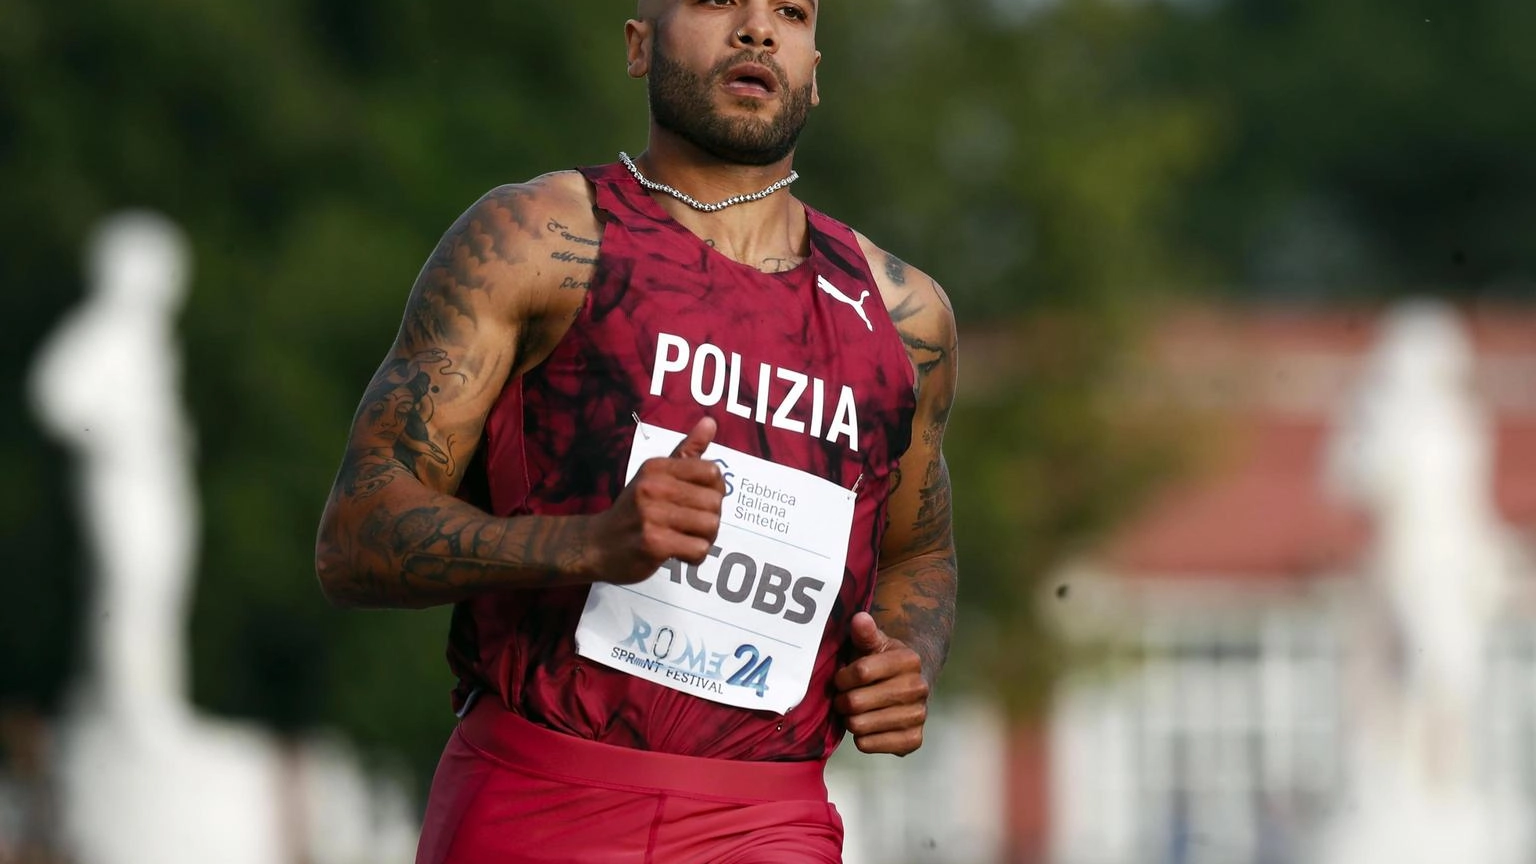 Atletica: Ostrava; Jacobs solo terzo sui 100, corre in 10"19